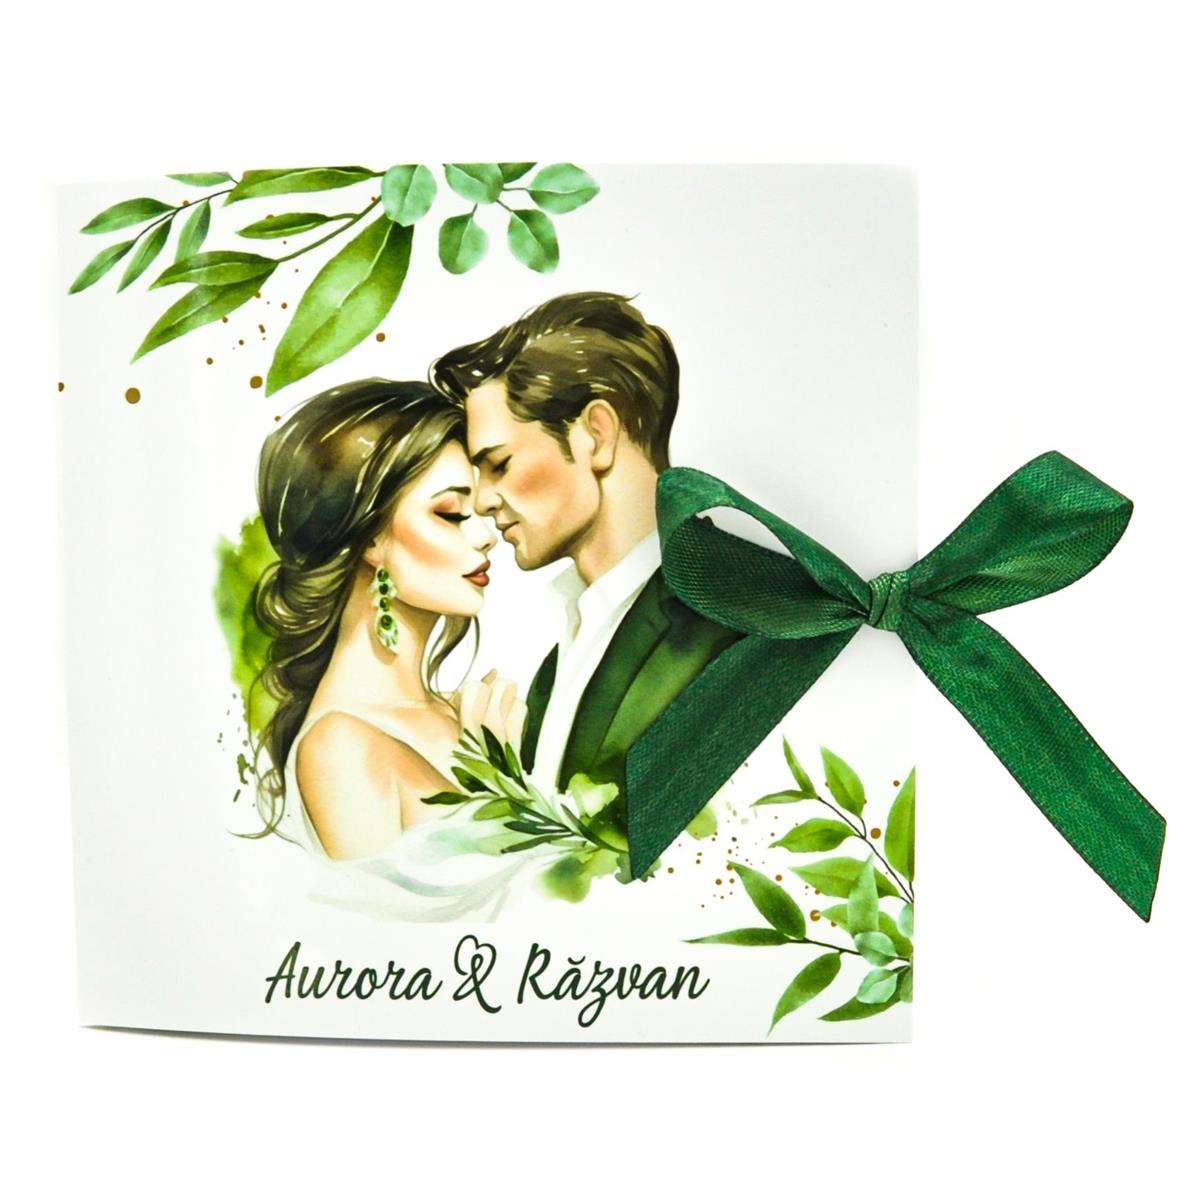 invitatie nunta model dragoste frunze verzi miri cuplu 1